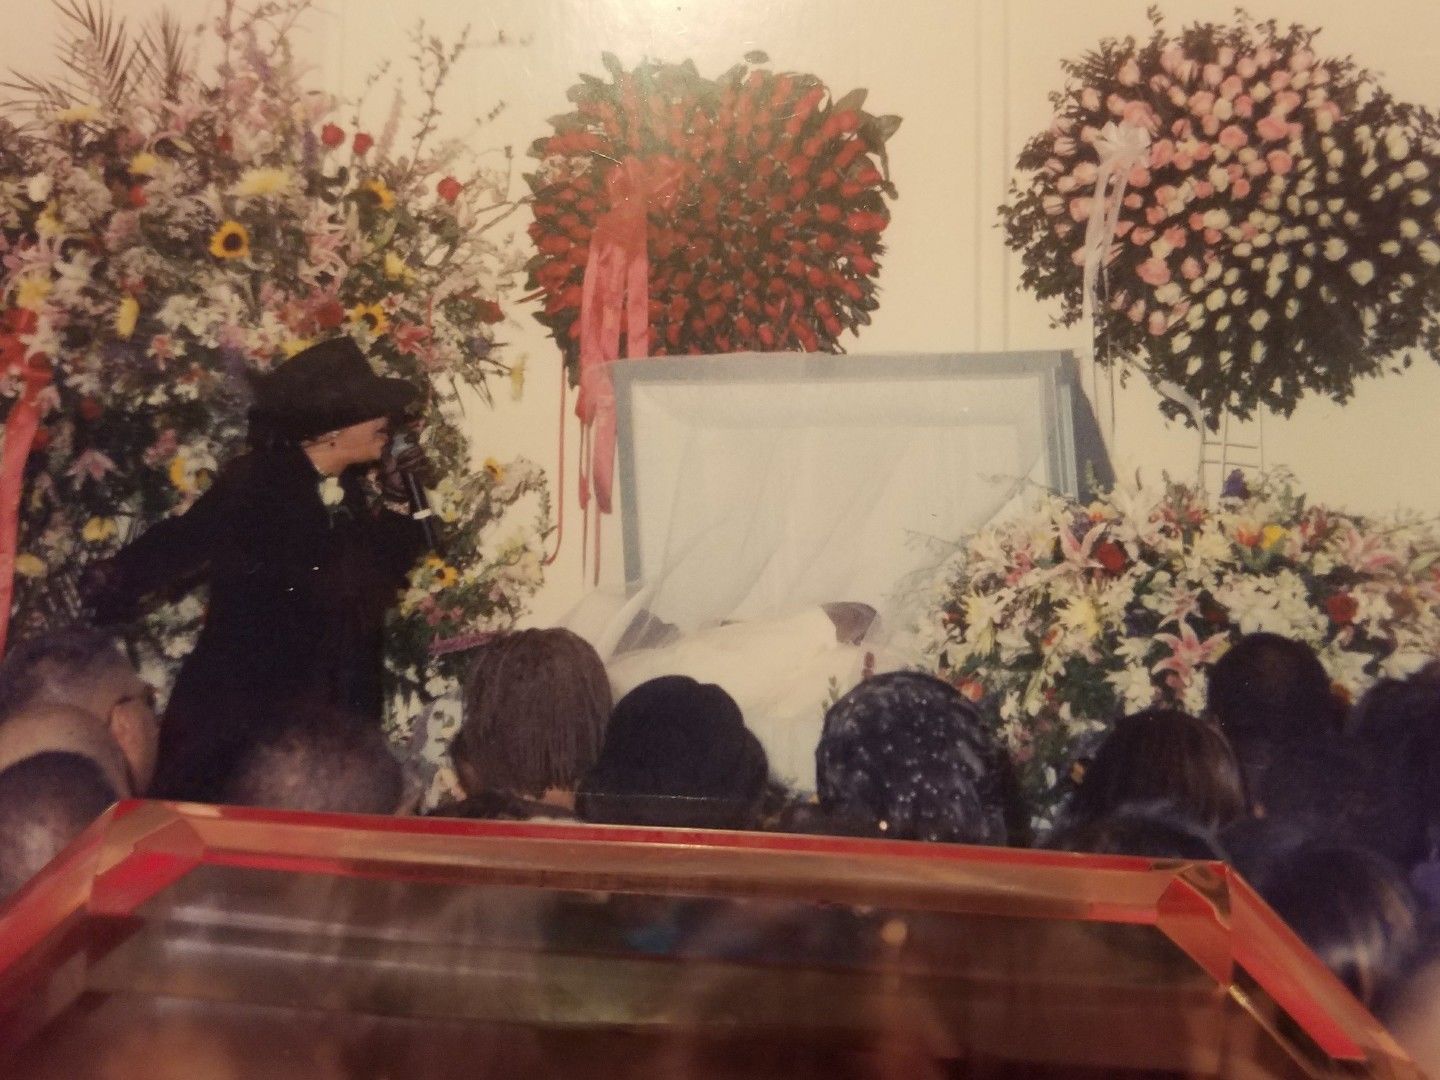 Une femme prend la parole lors de la veillée funèbre de Notorious B.I.G. Photo : The Coli Forum.